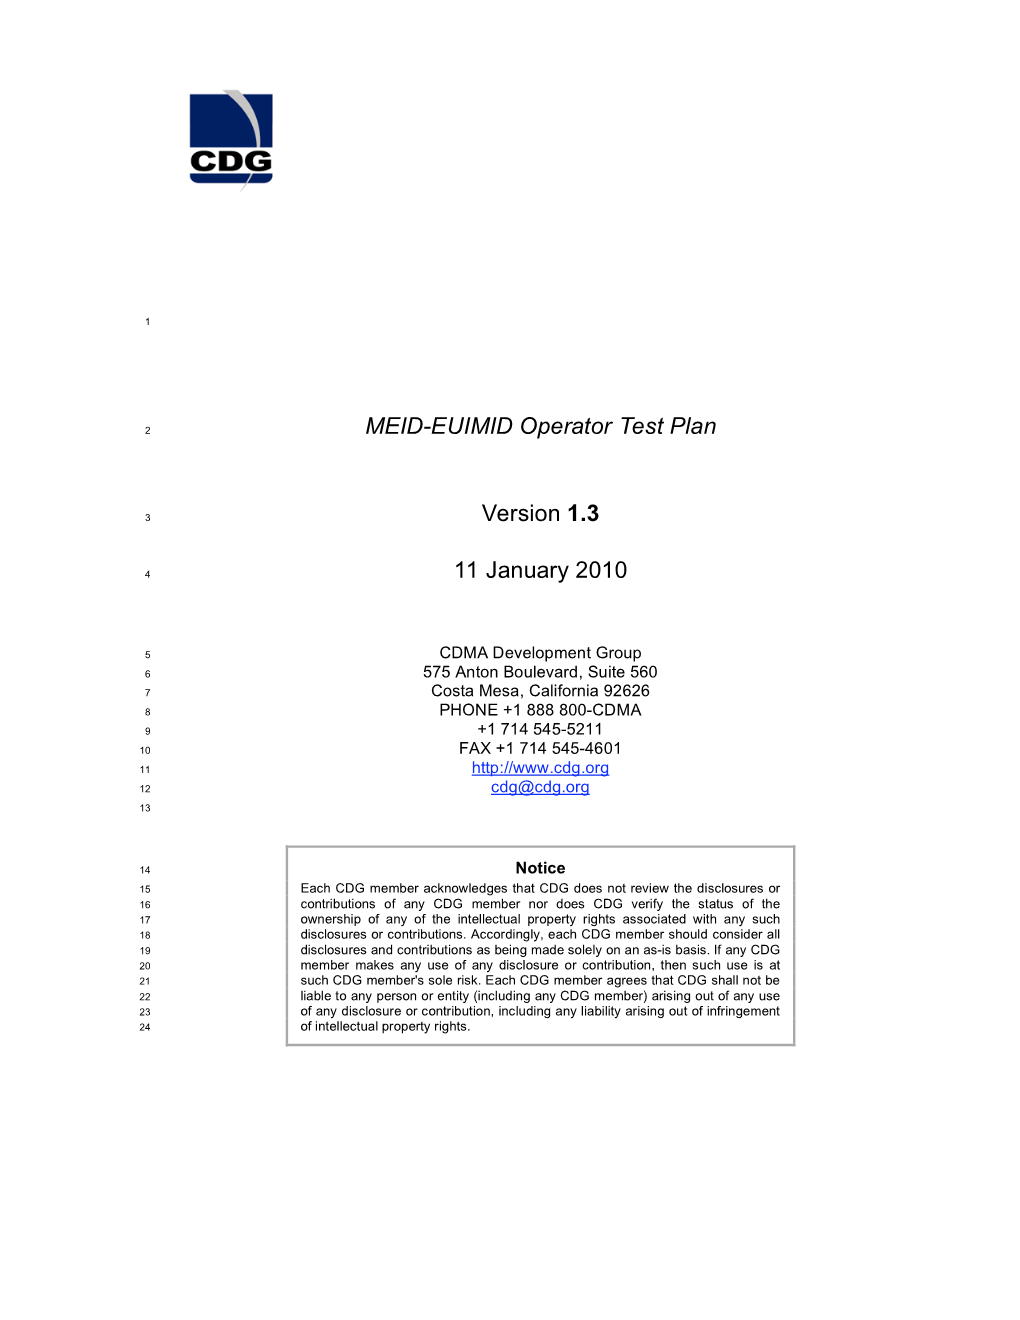 MEID-EUIMID Operator Test Plan, Ver 1.3, January 11, 2010